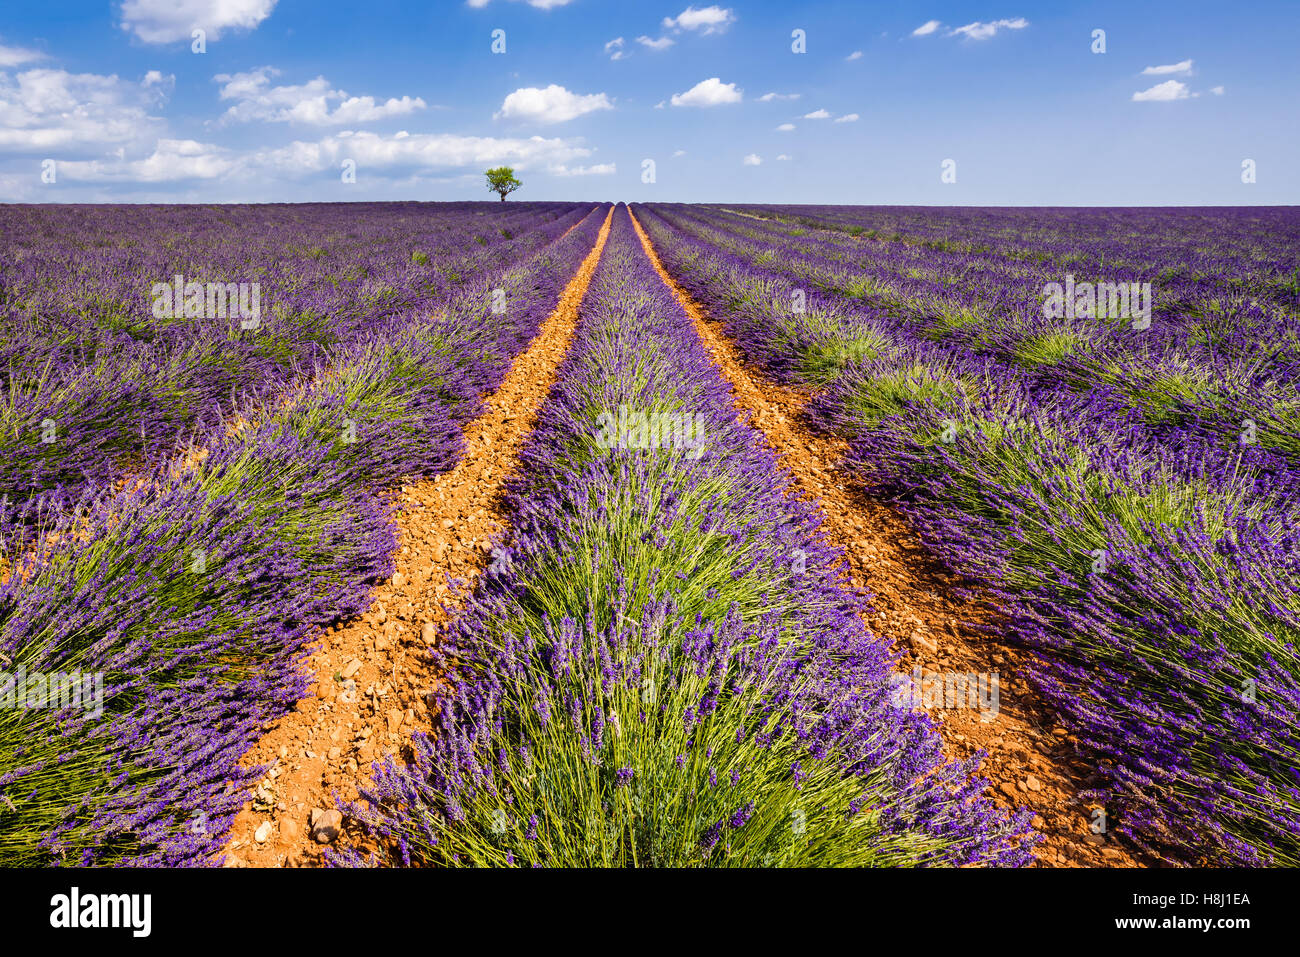 Lavendelfelder in Valensole mit einem Olivenbaum. Sommer in Alpes de Hautes Provence, südlichen französischen Alpen, Frankreich Stockfoto